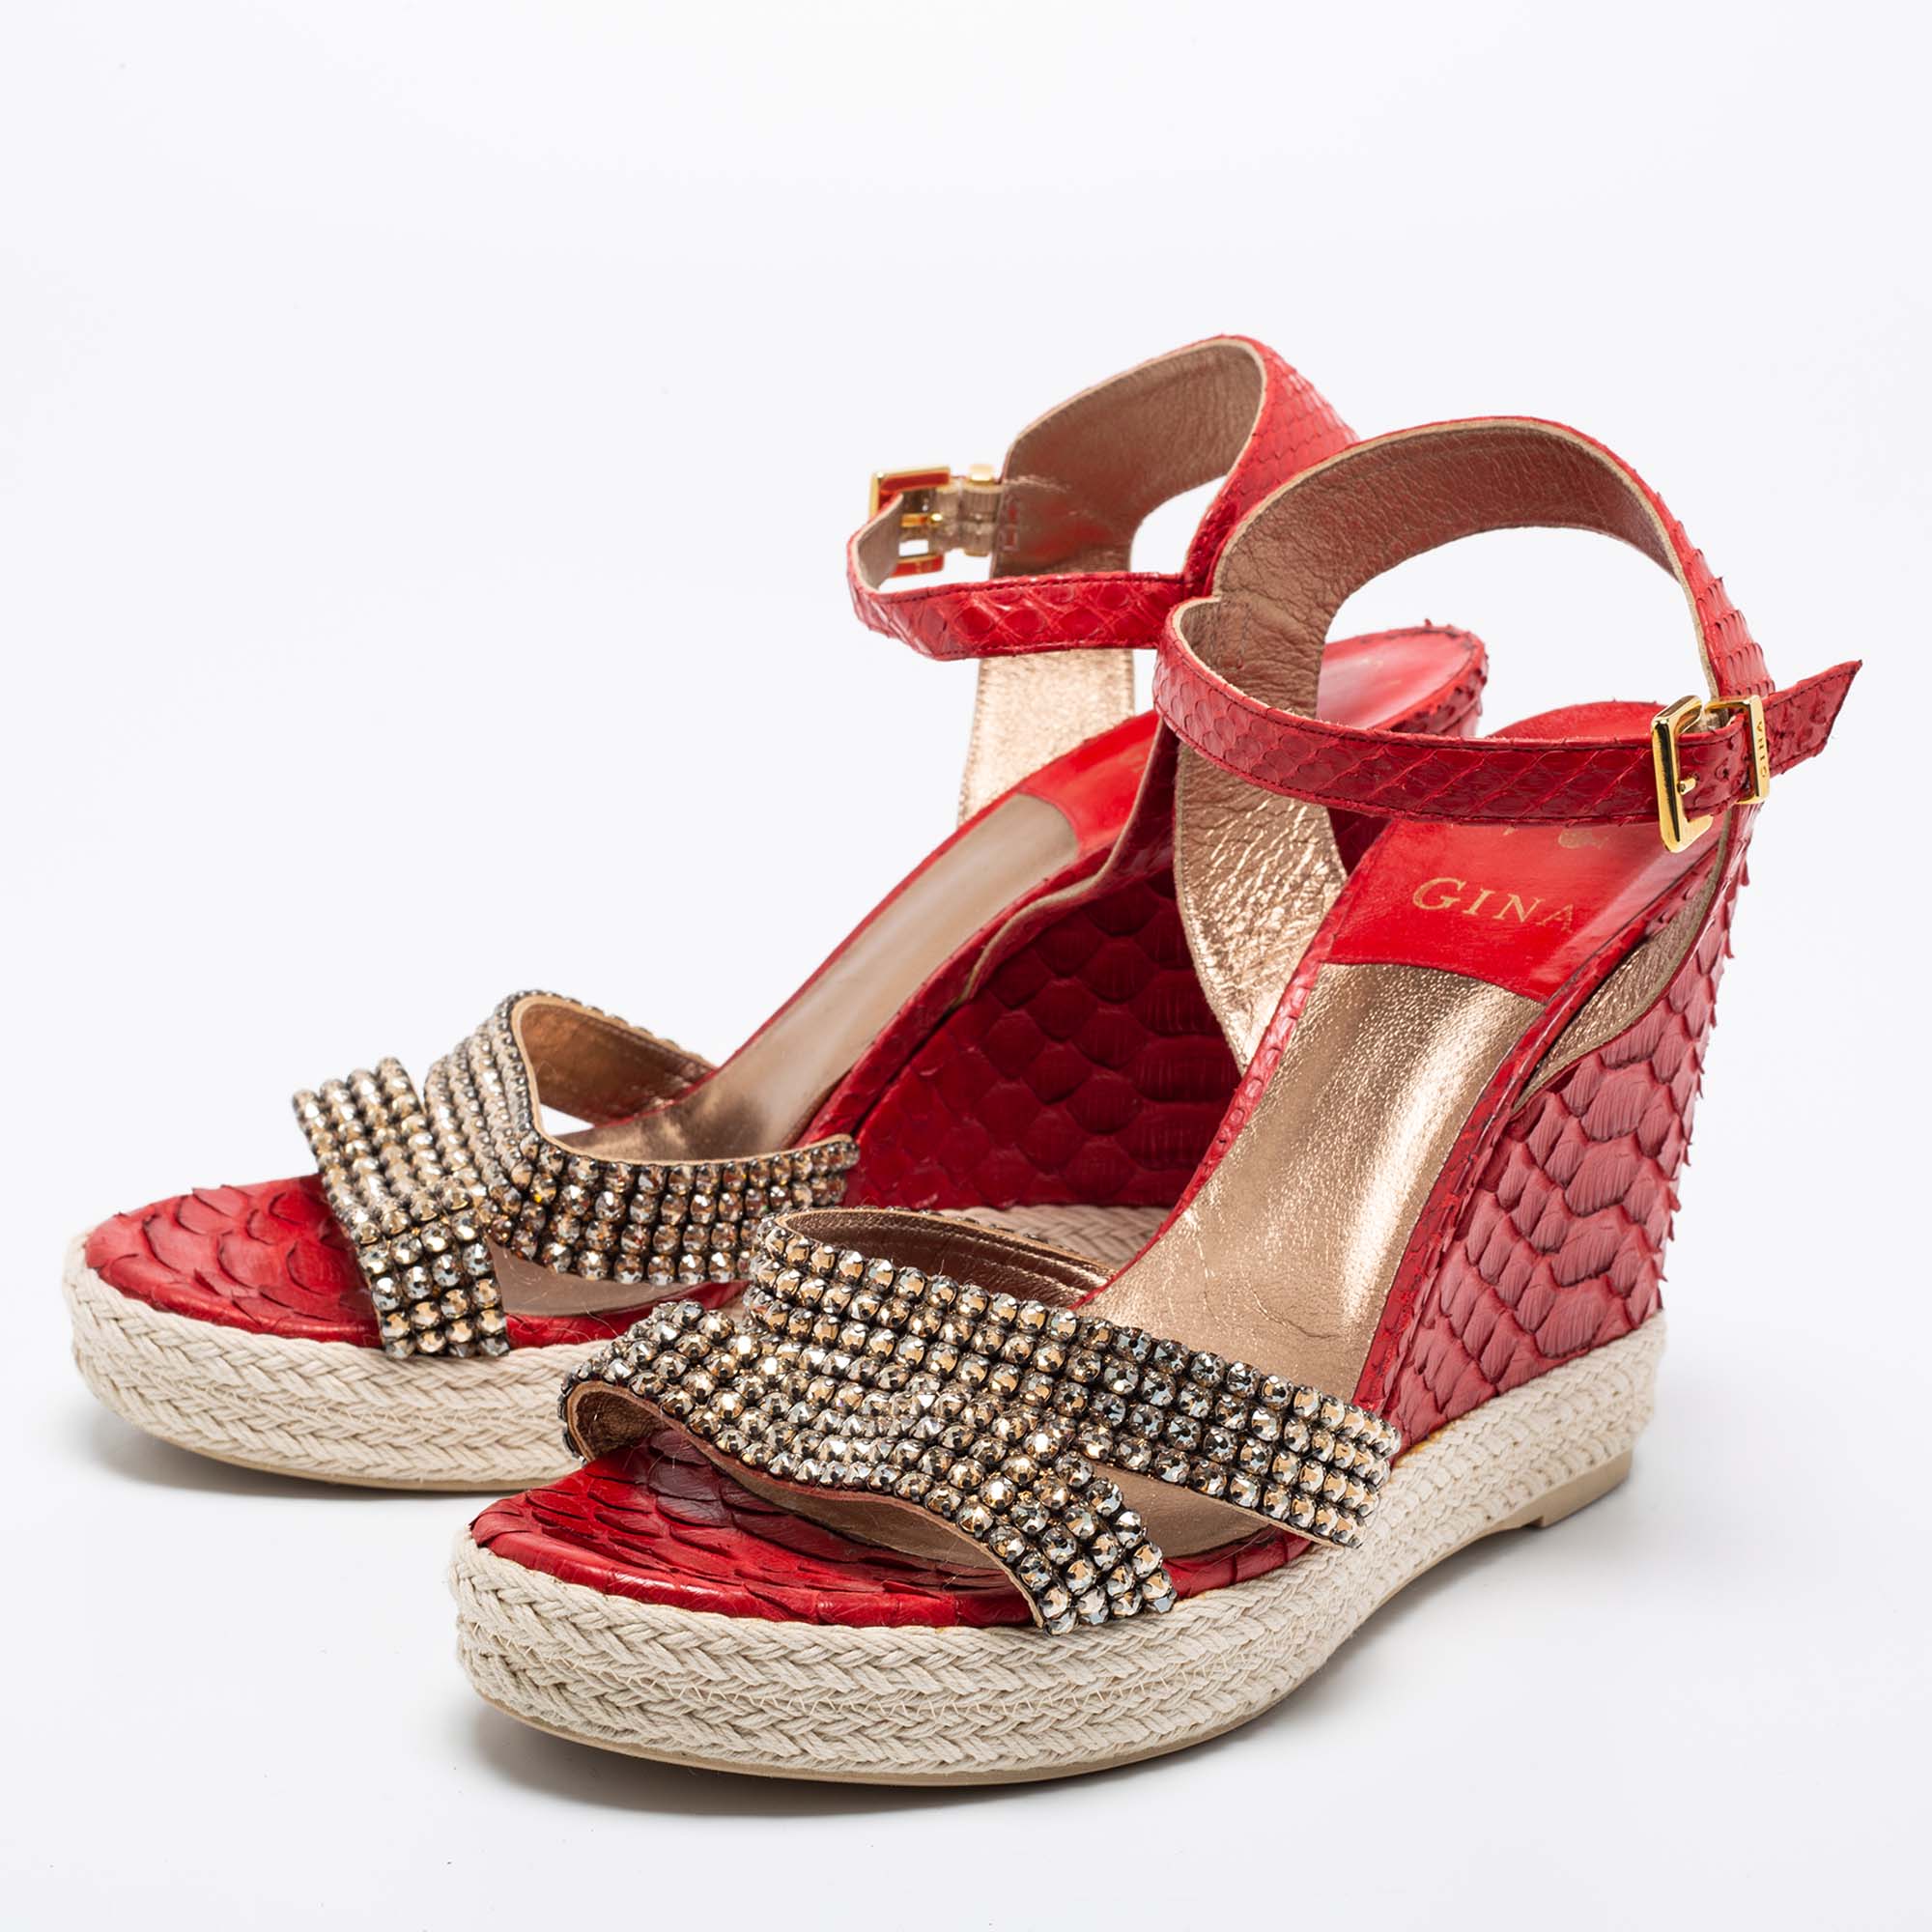 

Gina Red Python Leather Crystal Embellished Wedge Platform Ankle-Strap Sandals Size